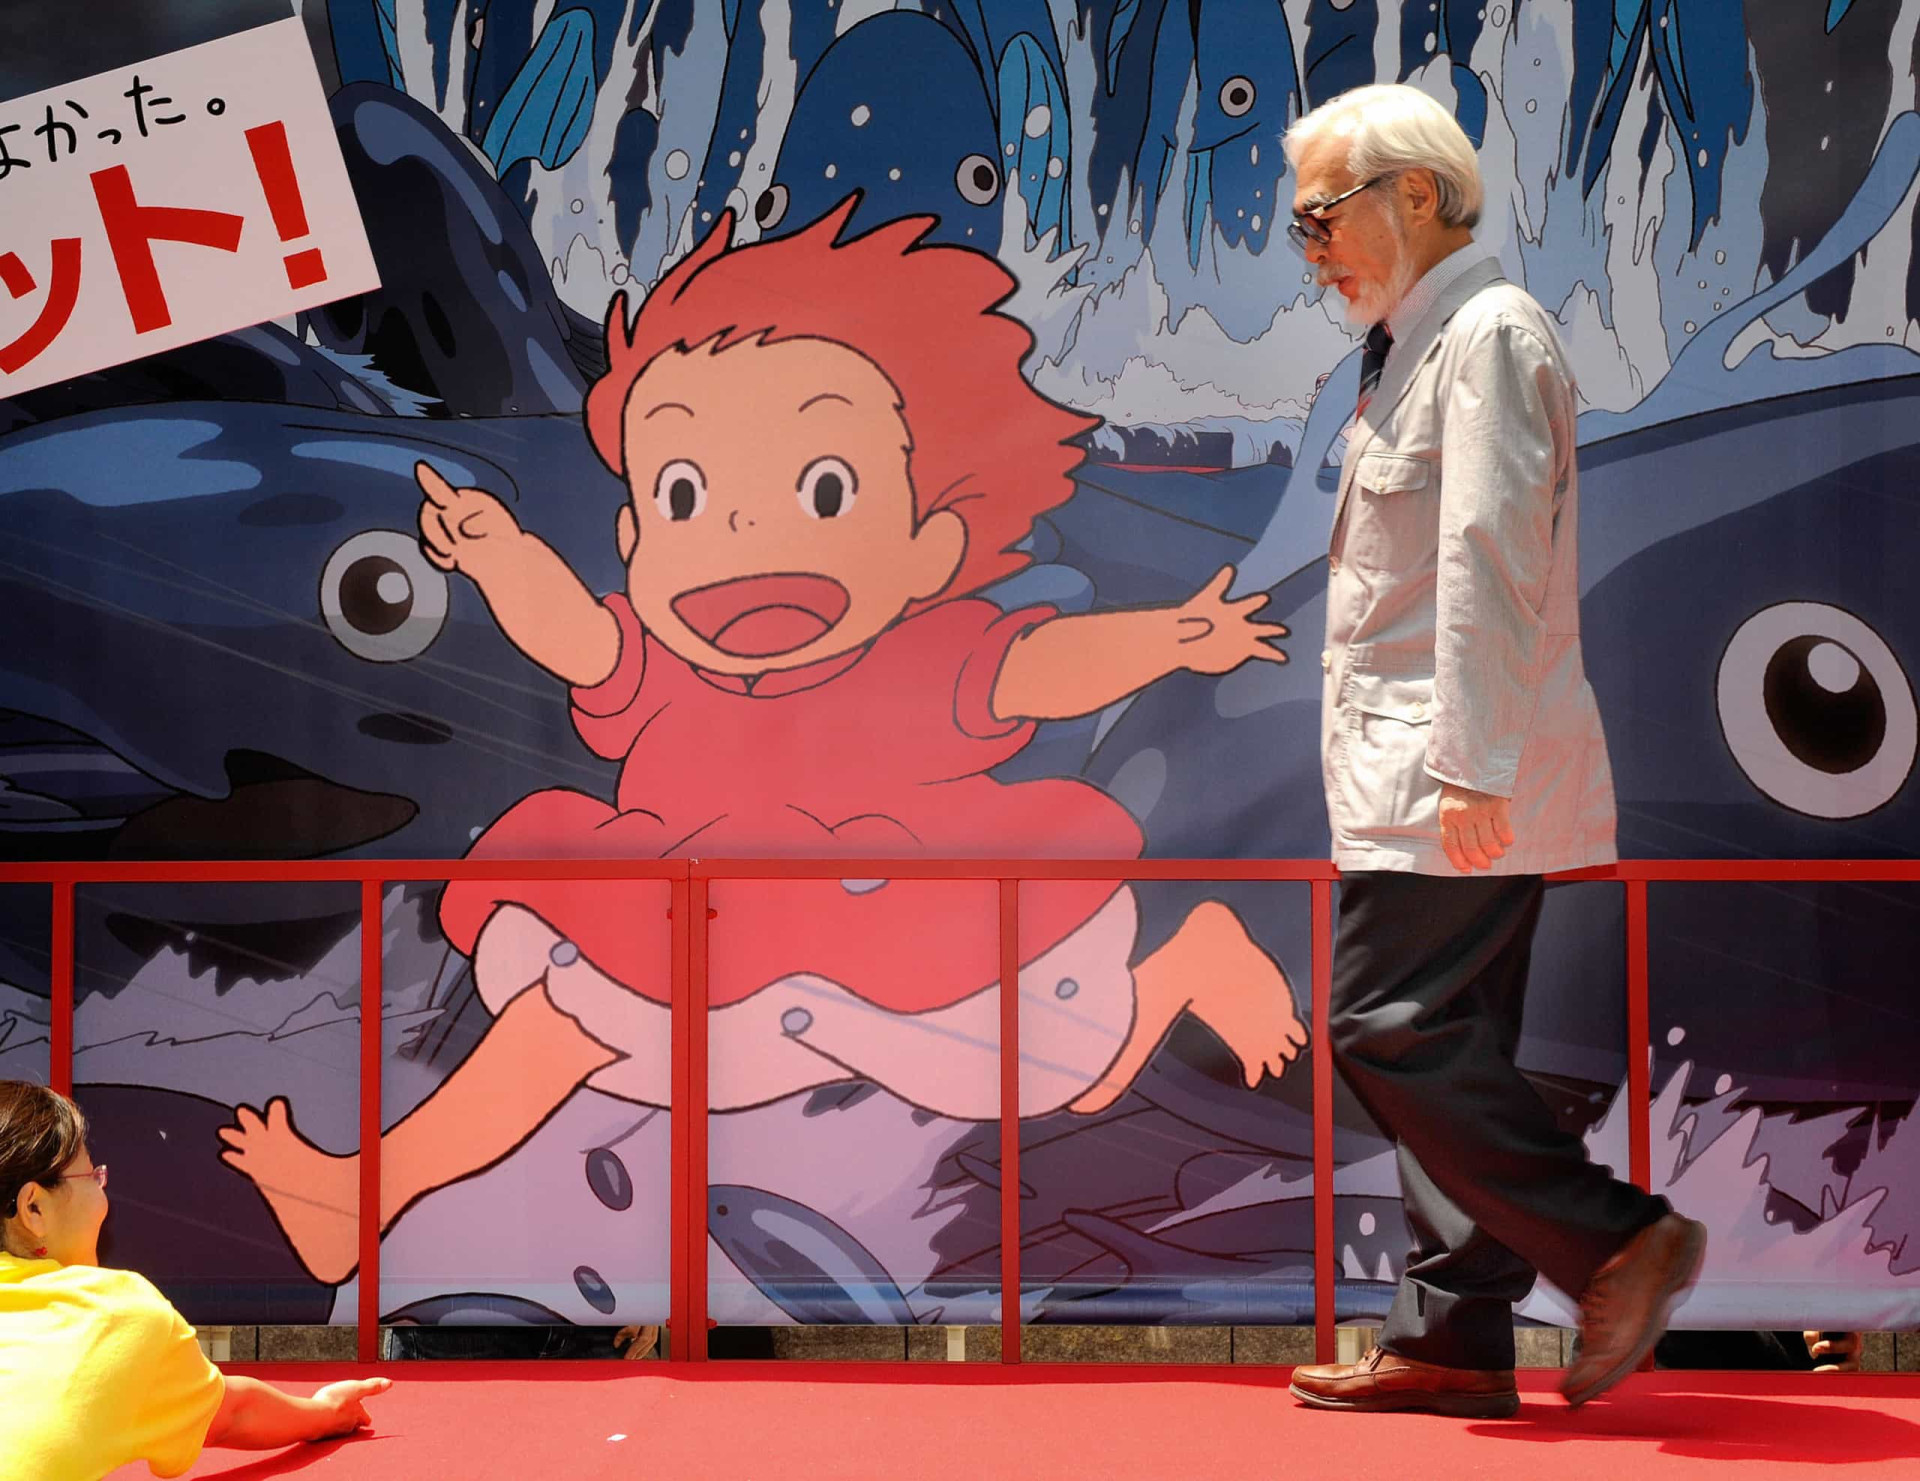 <p>Les films de Miyazaki abordent principalement des sujets nobles: l'impacte de l'humanité sur la nature, l'importance de la gentillesse et de la sagesse ainsi que le courage des enfants face à certaines épreuves de la vie. C'est de cette manière que les trois collaborateurs ont touché des millions de personnes à travers le monde.</p><p><a href="https://www.msn.com/fr-fr/community/channel/vid-7xx8mnucu55yw63we9va2gwr7uihbxwc68fxqp25x6tg4ftibpra?cvid=94631541bc0f4f89bfd59158d696ad7e">Suivez-nous et accédez tous les jours à du contenu exclusif</a></p>